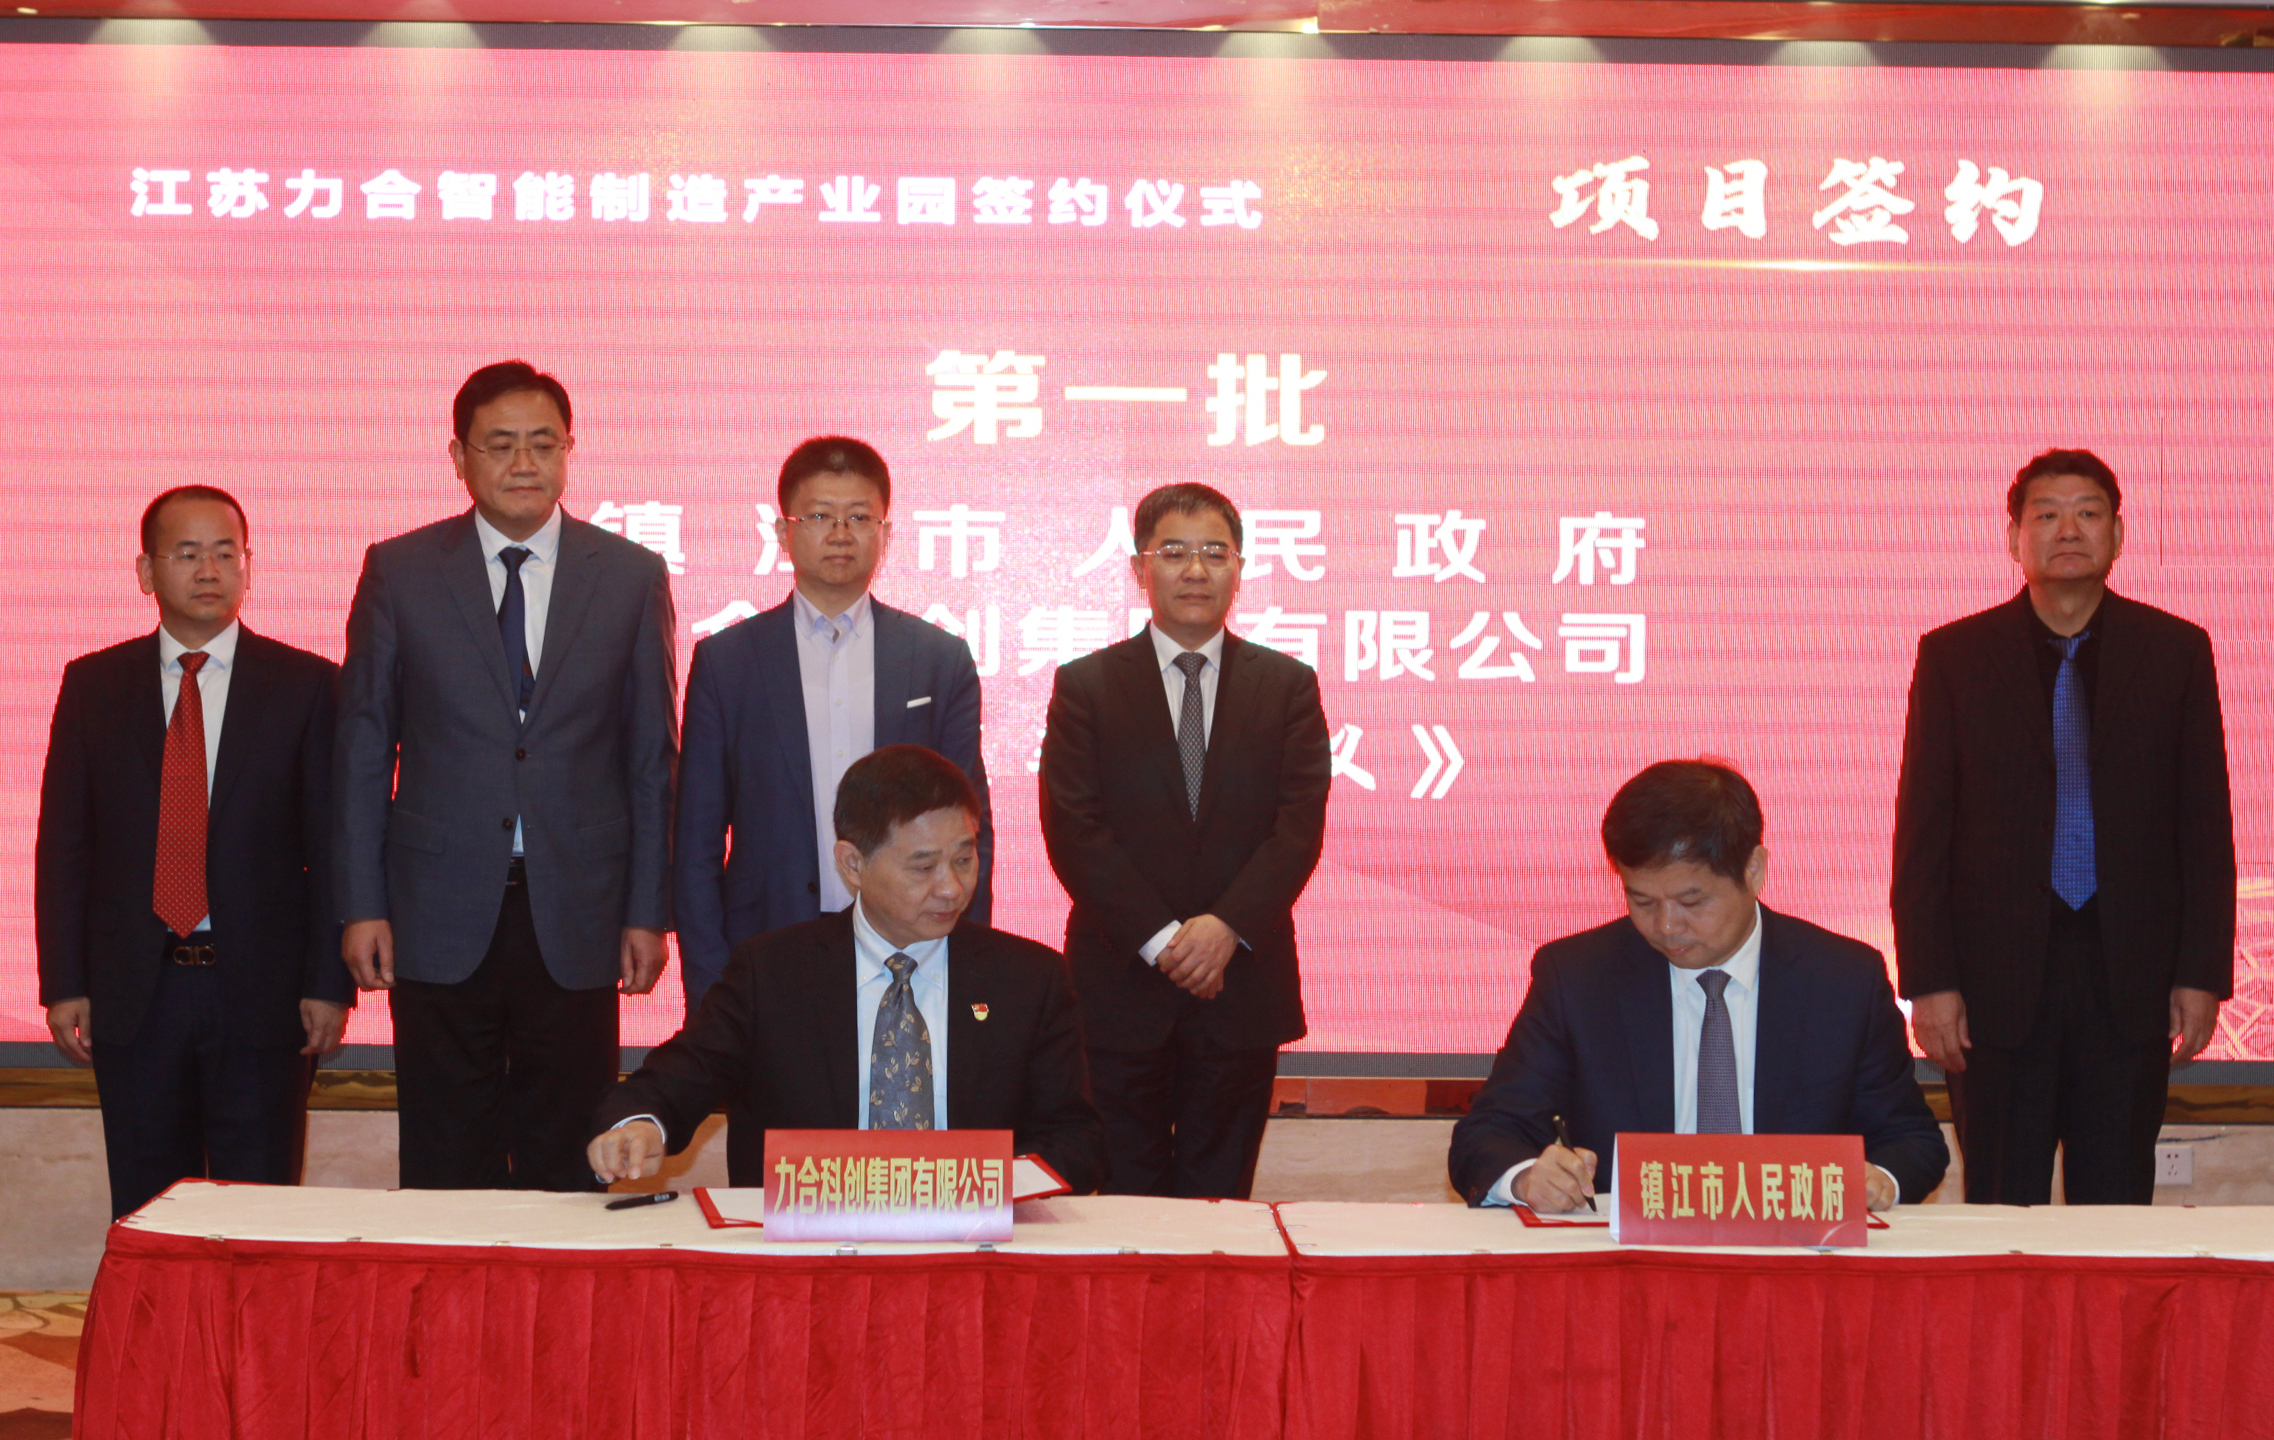 力合科创集团与镇江市签署合作协议 在丹阳共建江苏力合智能制造产业园